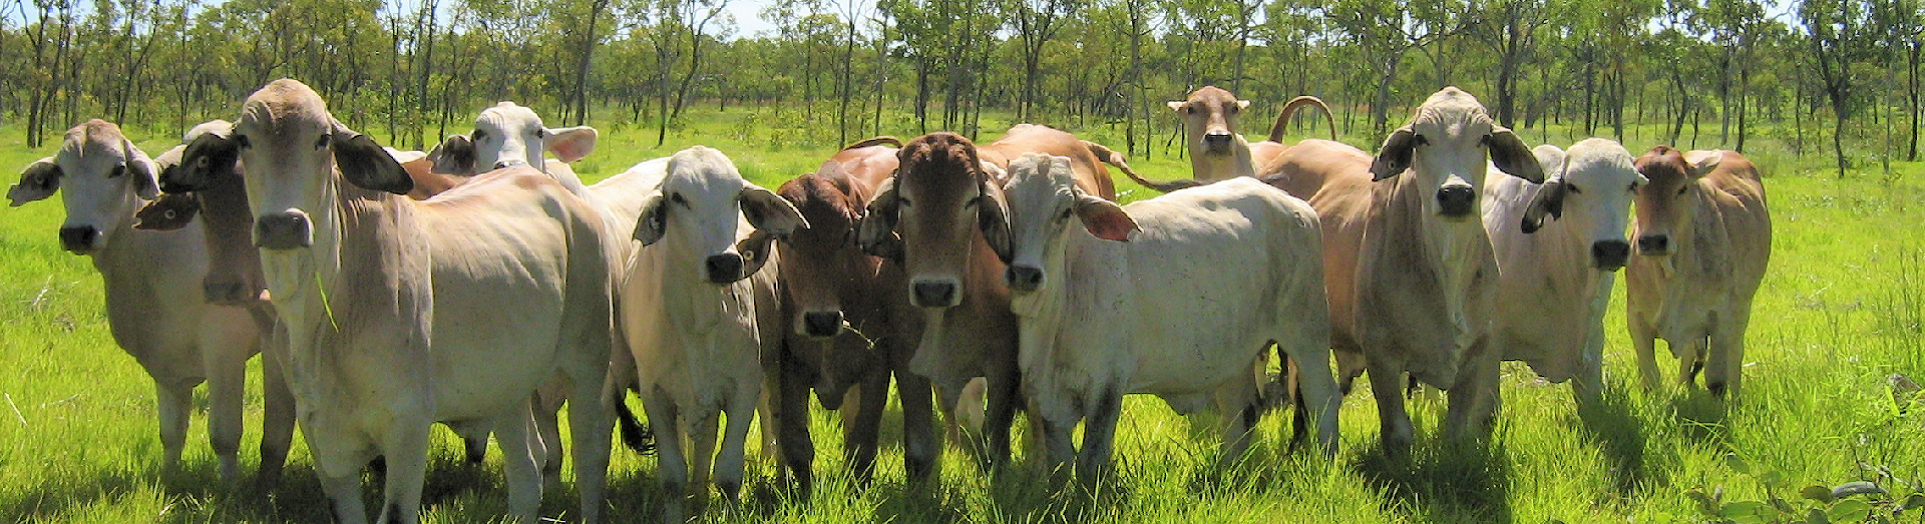 Brahman cattle in a paddock 